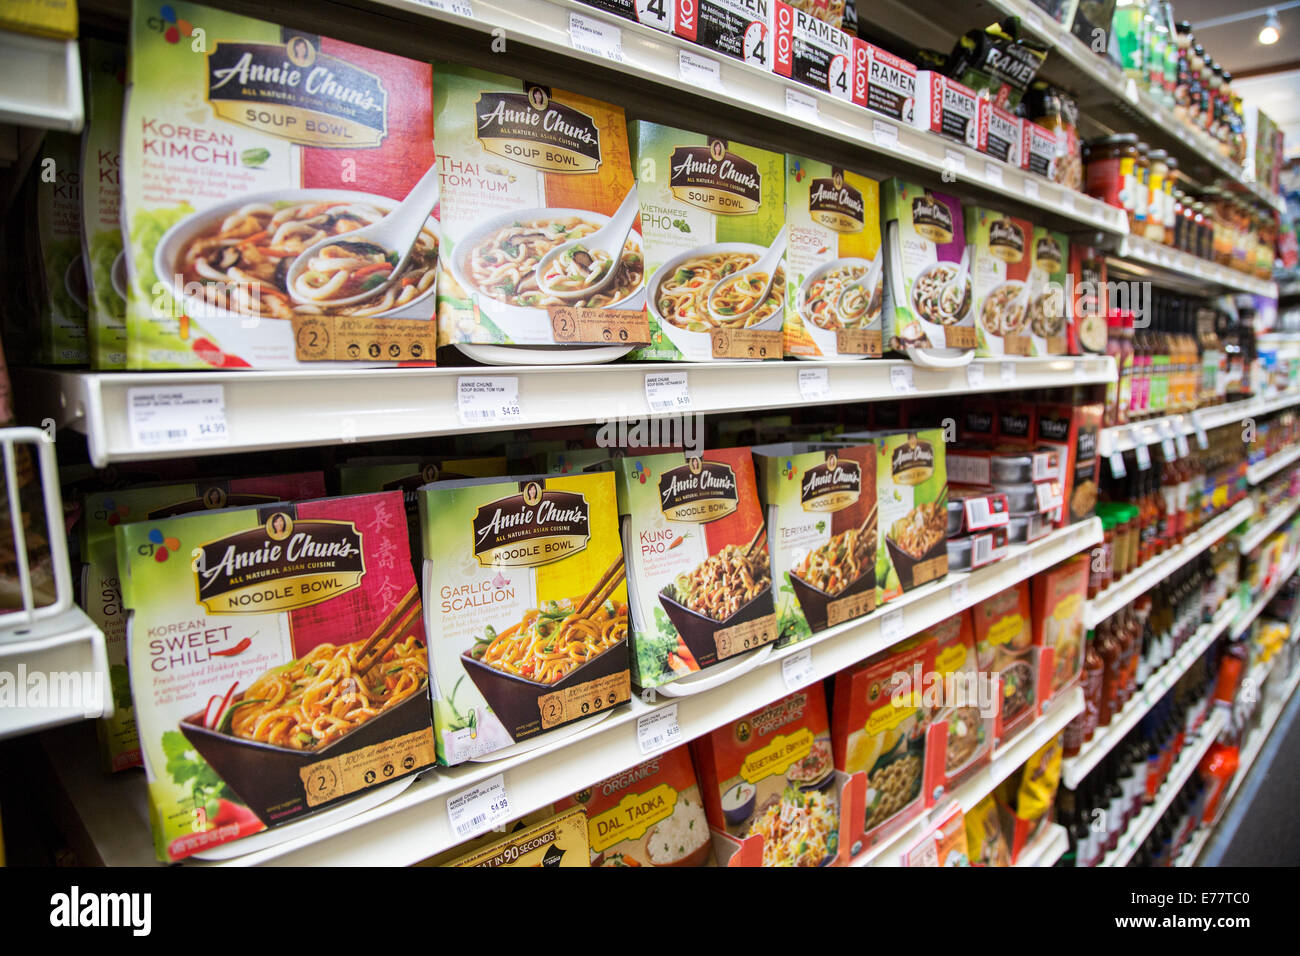 Eine natürliche Lebensmittel Lebensmittelgeschäft Gang mit Regalen von Annie Chun Nudeln und Suppe Schüssel Pakete. Stockfoto